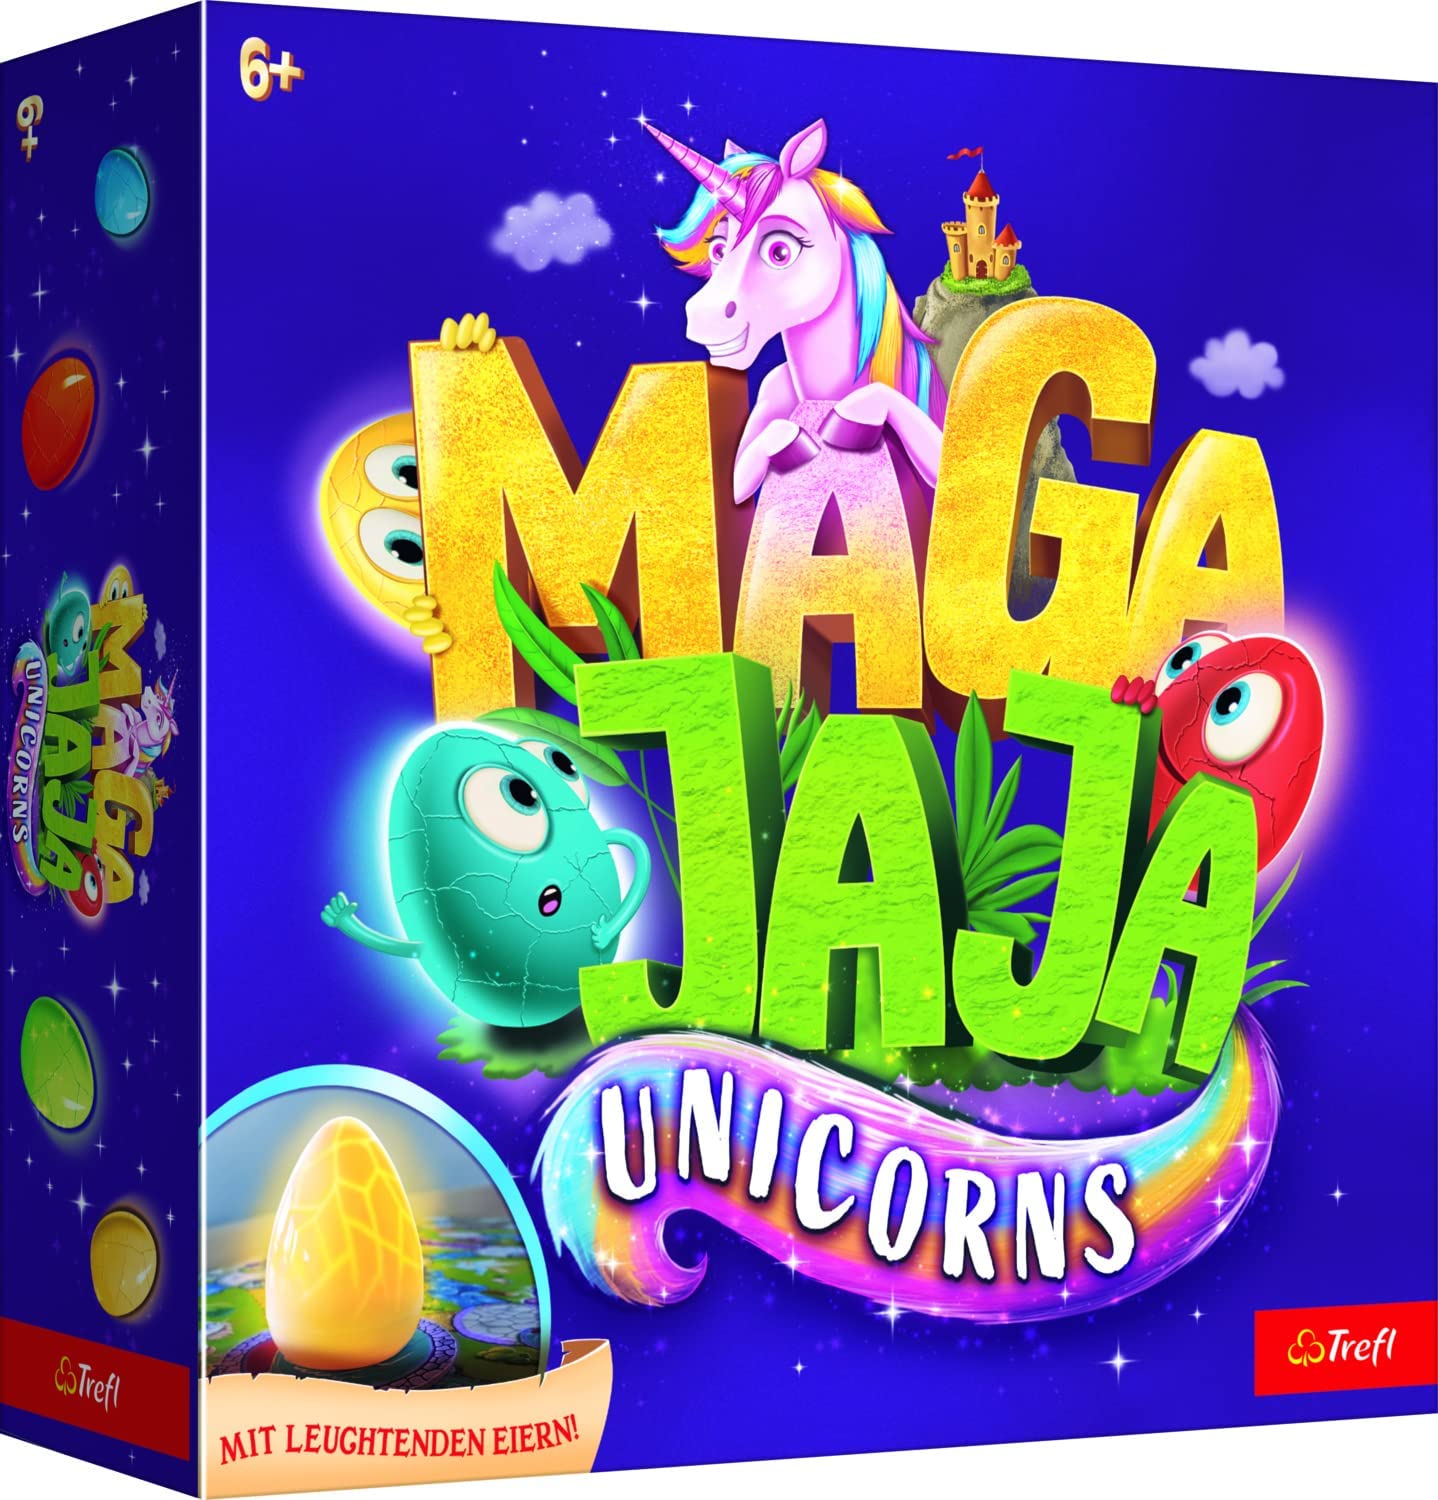 Trefl - Magajaja Unicorns - Familien-Brettspiel, leuchtende elektrische Eier und magnetische Spielsteine, Märchenwelt der Einhörner Neu